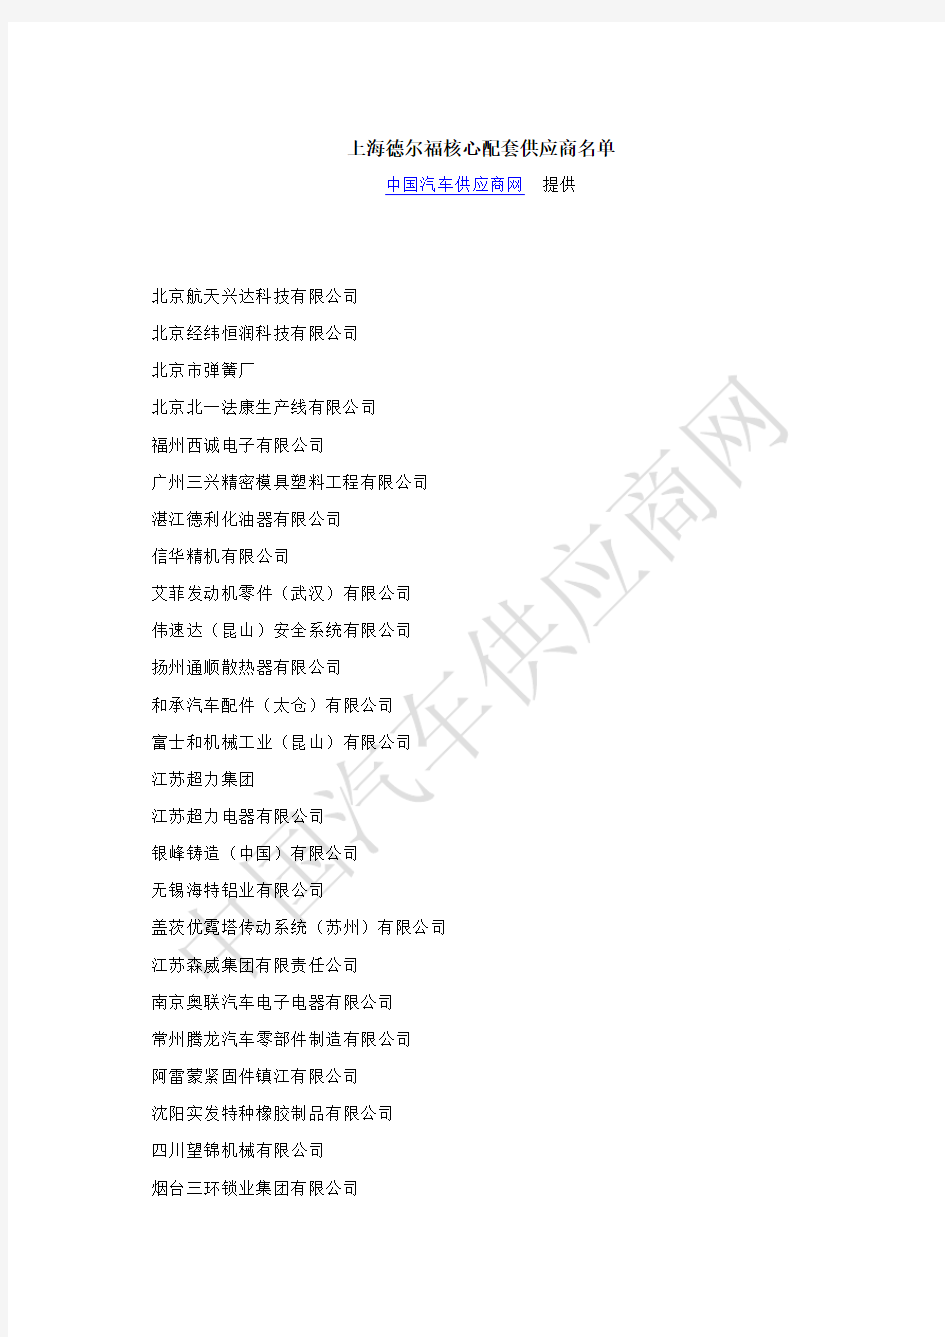 上海德尔福核心配套供应商名单